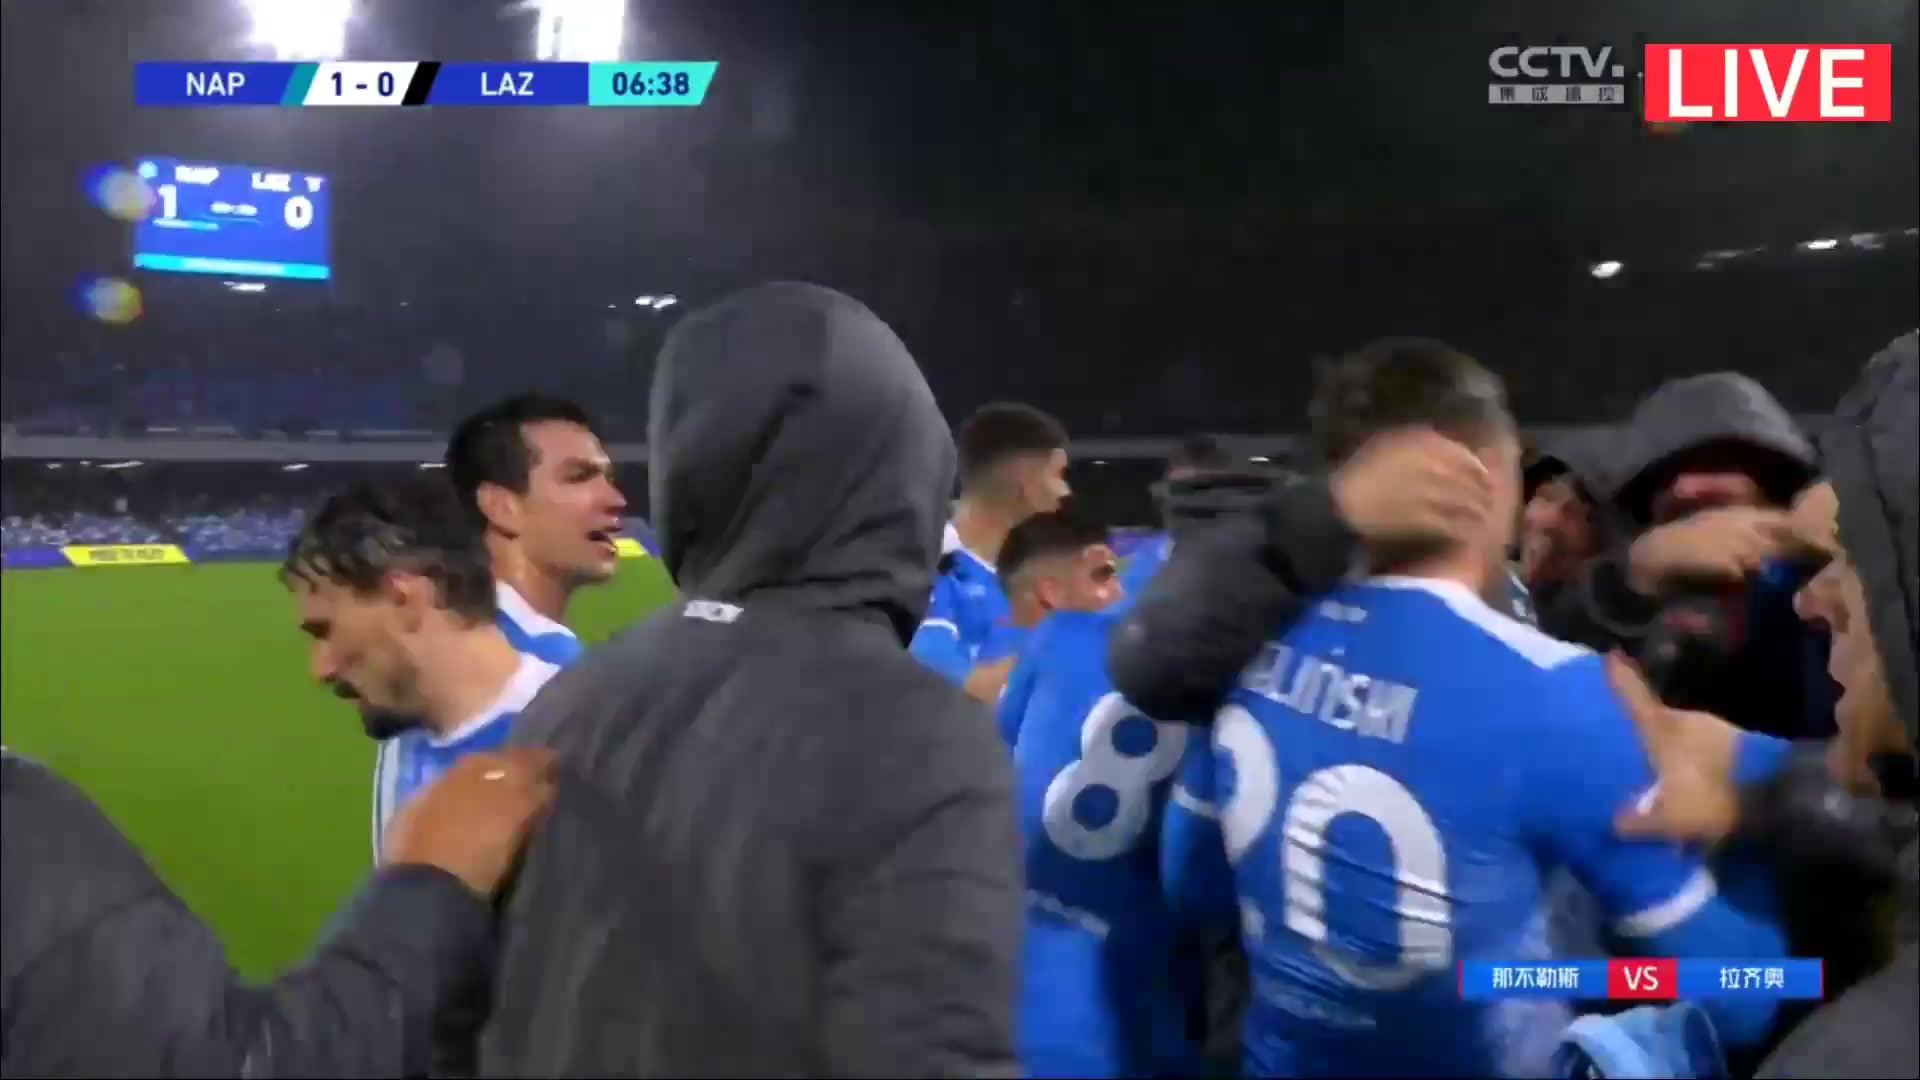 Serie A Napoli Vs Lazio Piotr Zielinski Goal in 8 min, Score 1:0